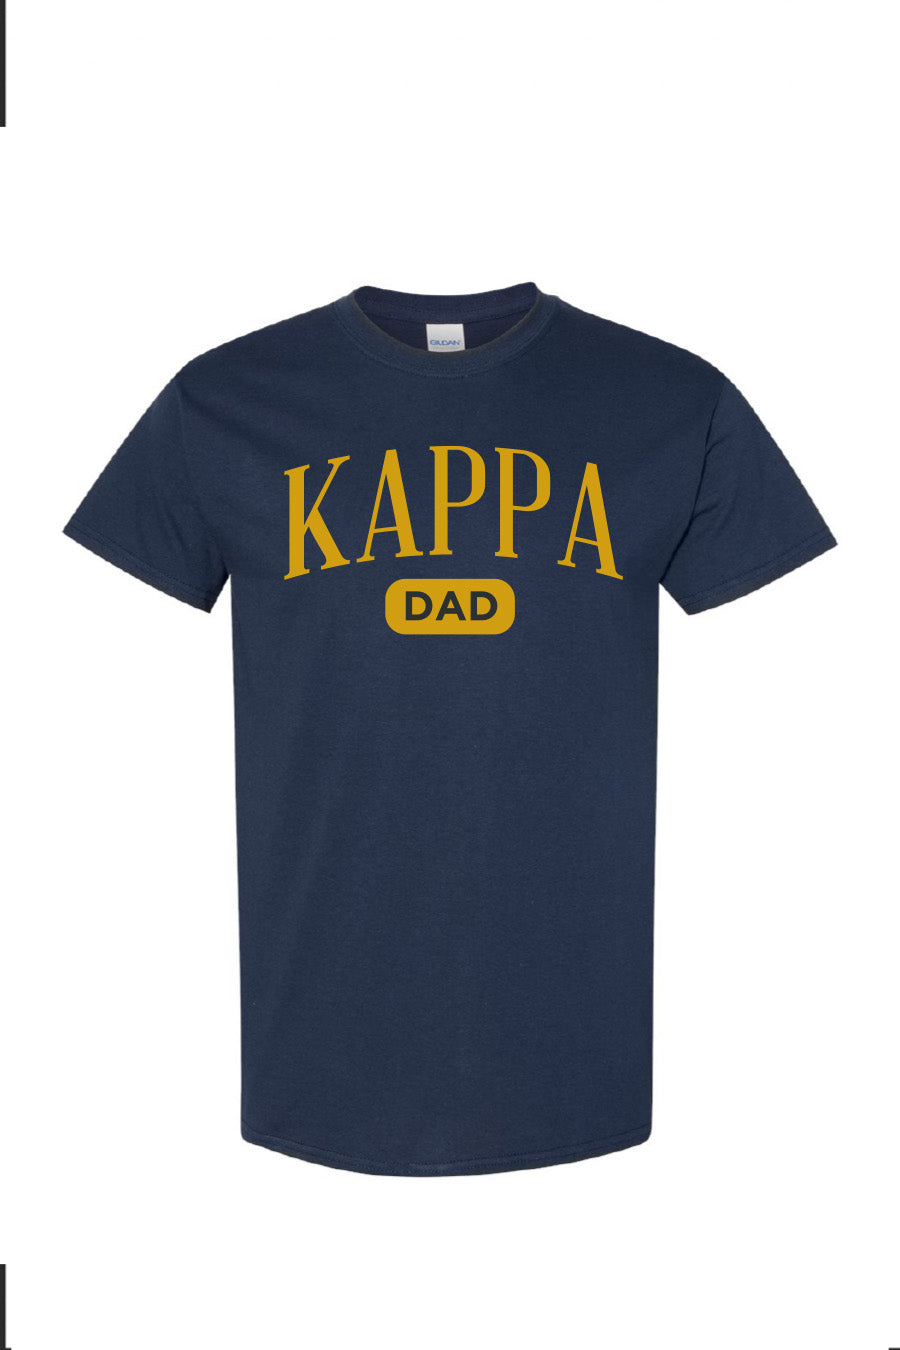 Kappa Dad Navy Tee